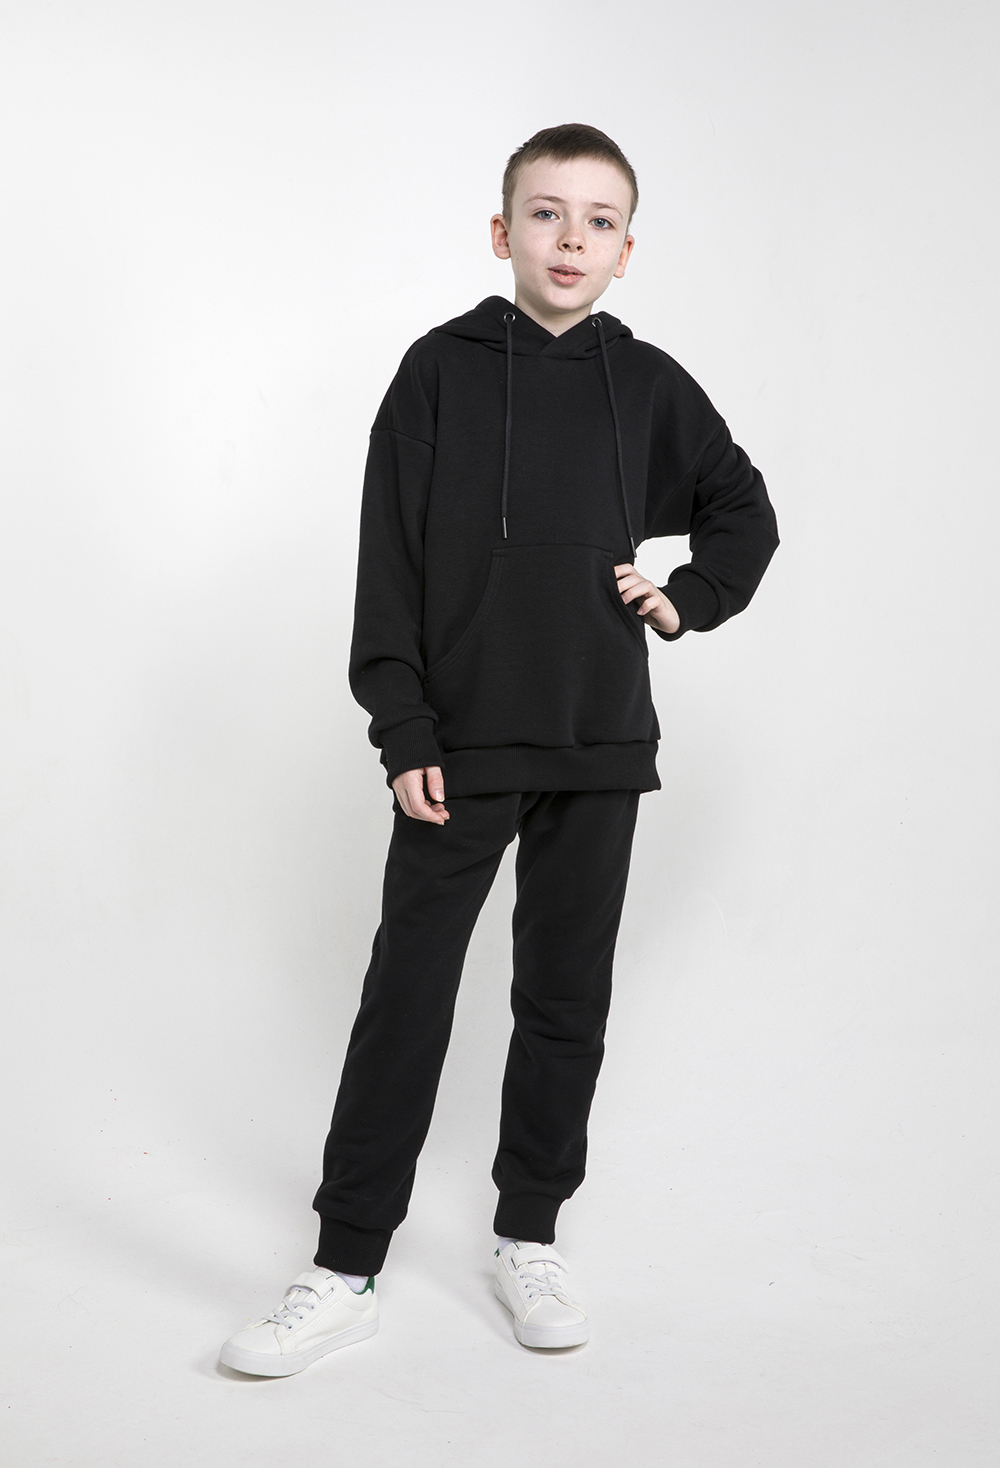 Детский спортивный костюм, МаdbаТ, к0002, р.158, цв. черный